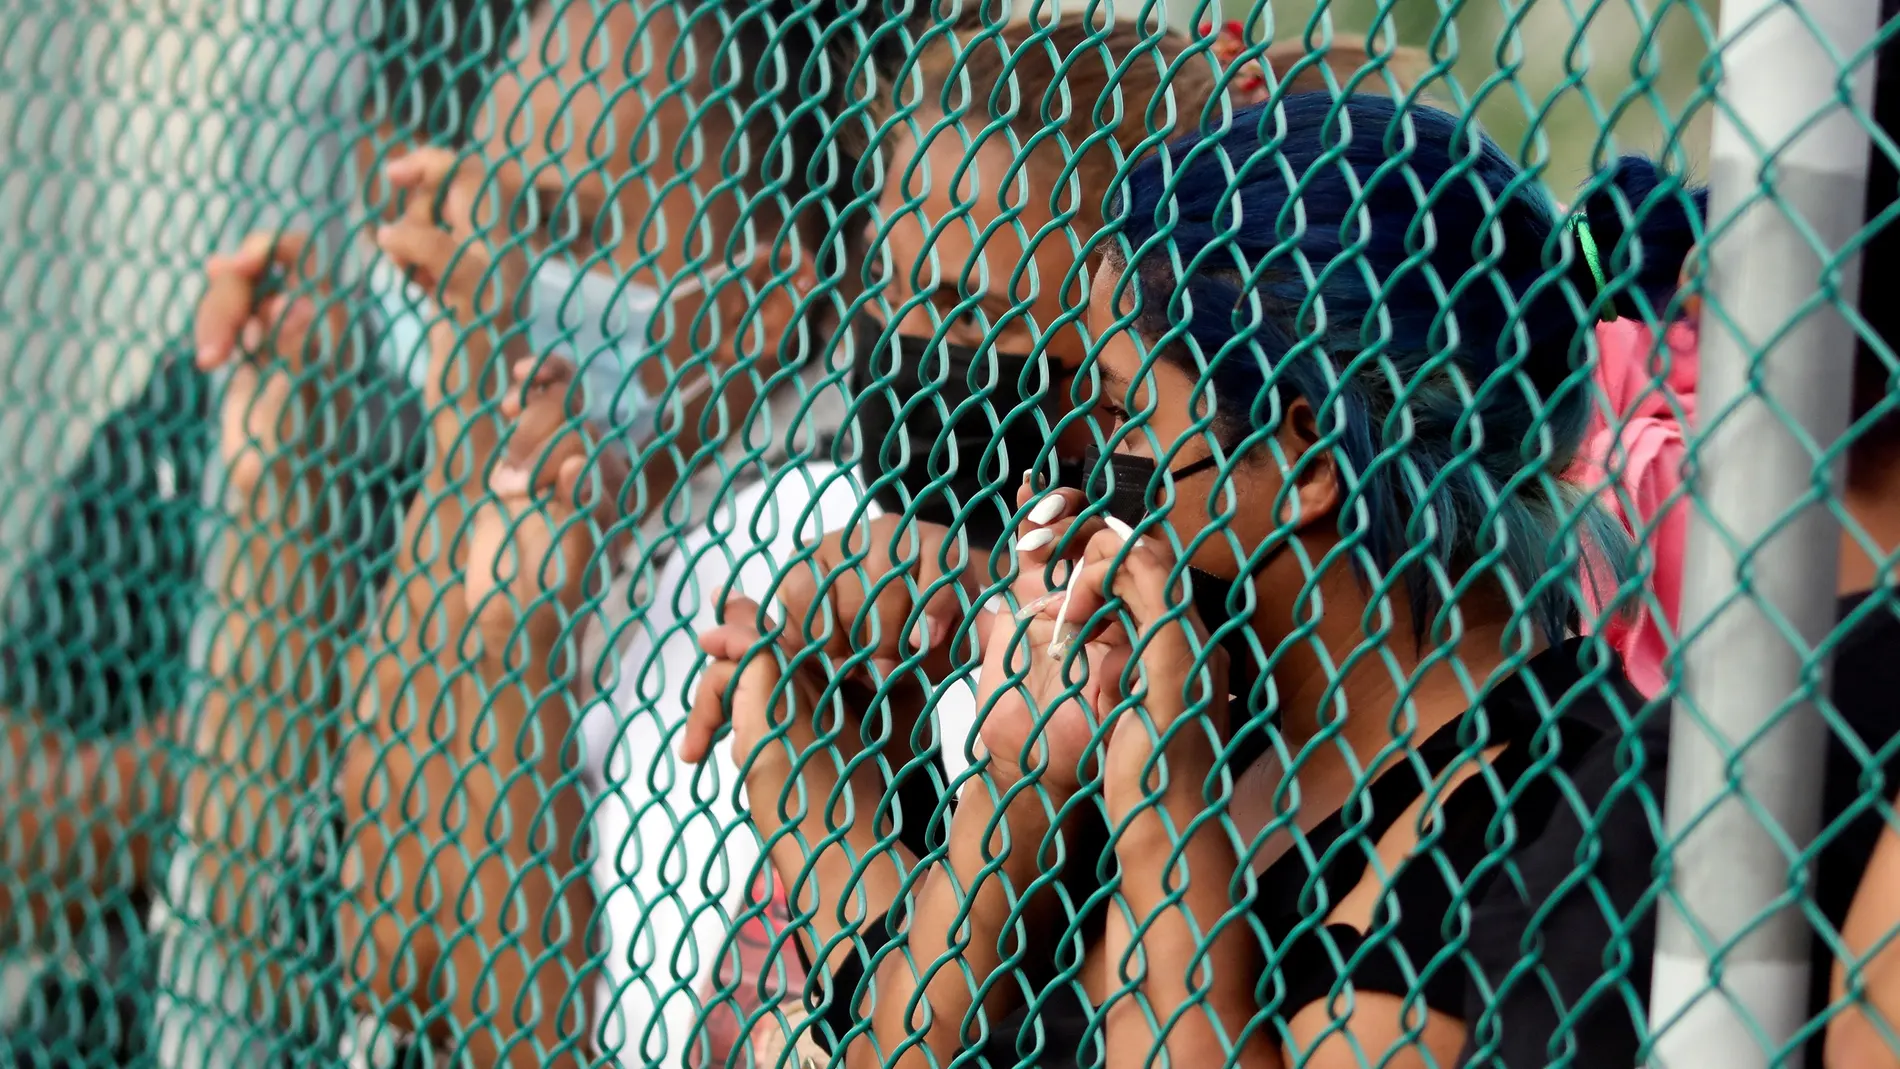 AME6347. MOROCELI (HONDURAS), 17/06/2021.- Familiares de presos esperan información en la entrada de la cárcel de máxima seguridad conocida como La Tolva donde sucedió una reyerta, hoy, en el municipio de Morocelí, departamento de El Paraíso (Honduras). Al menos cinco personas murieron y otras 39 resultaron lesionadas en una reyerta que se registró este jueves en una cárcel de "máxima seguridad" en el oriente de Honduras, informó la presidenta de la Asociación de Familiares de Privados de Libertad, Delma Ordóñez. EFE/ Gustavo Amador